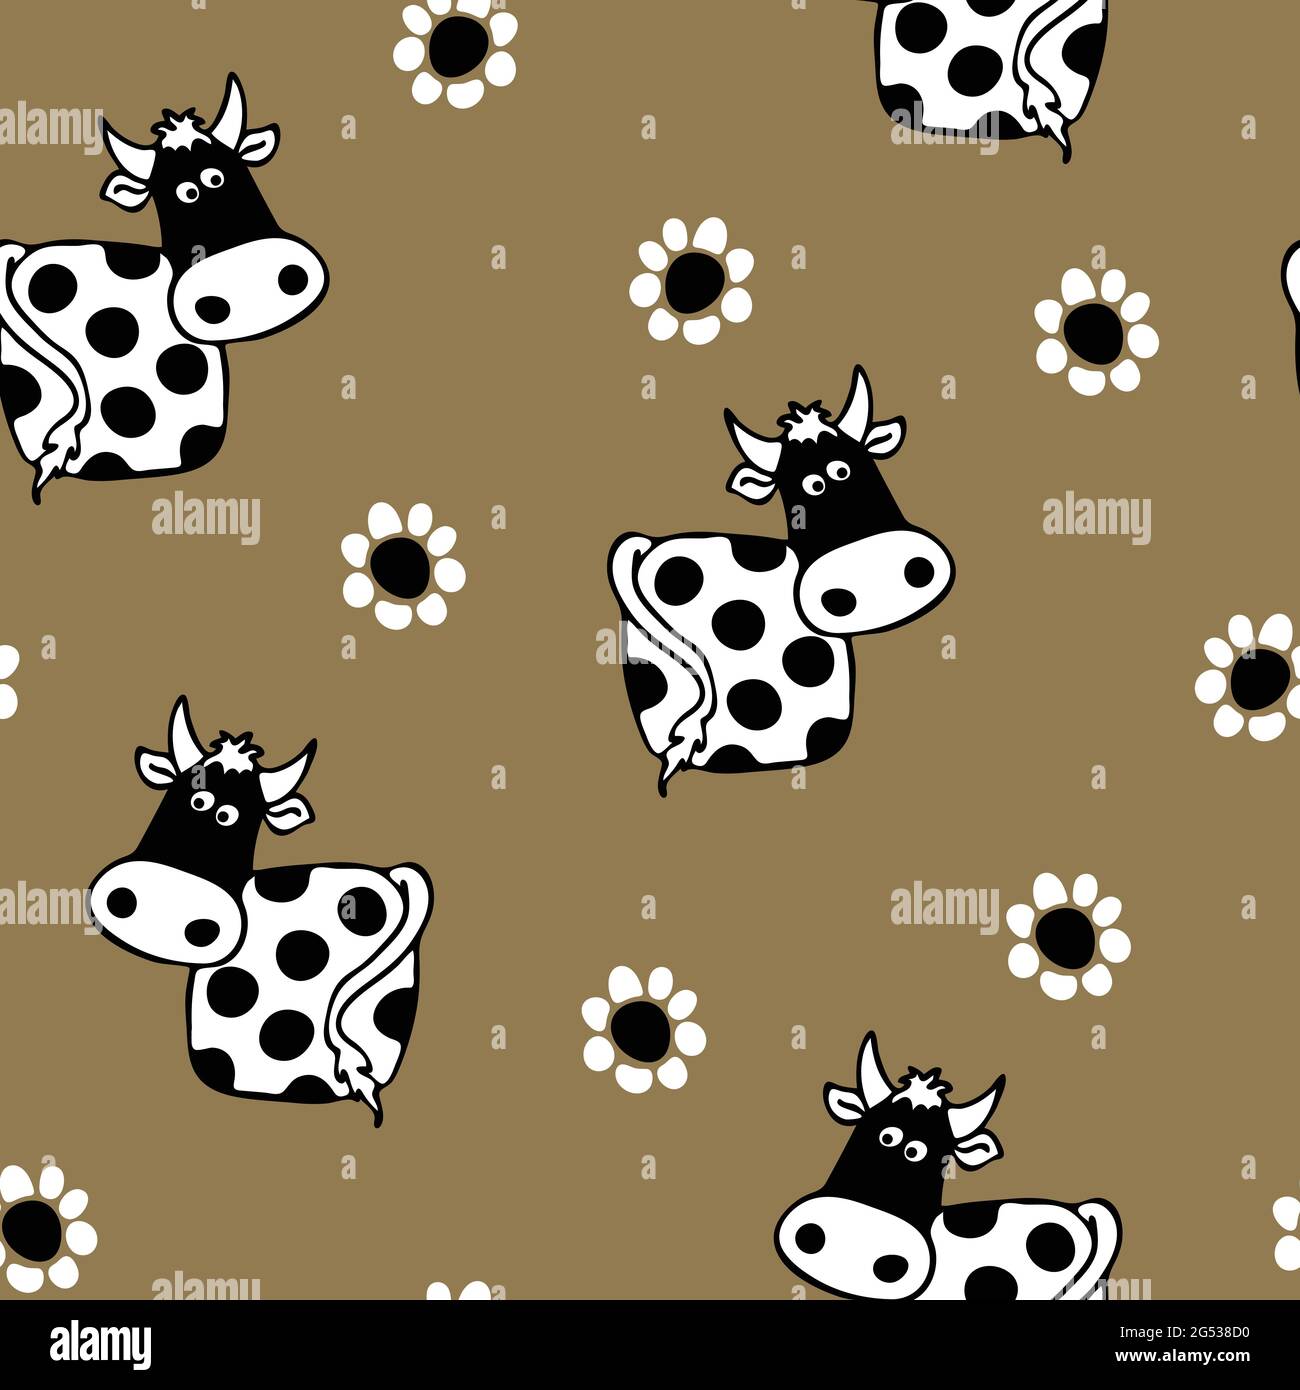 Nahtloses Vektor-Muster mit Kuh und Blumen auf grauem Hintergrund. Schwarz-weiße Tiertapete für Kinder. Niedliche Mode-Textilien. Stock Vektor